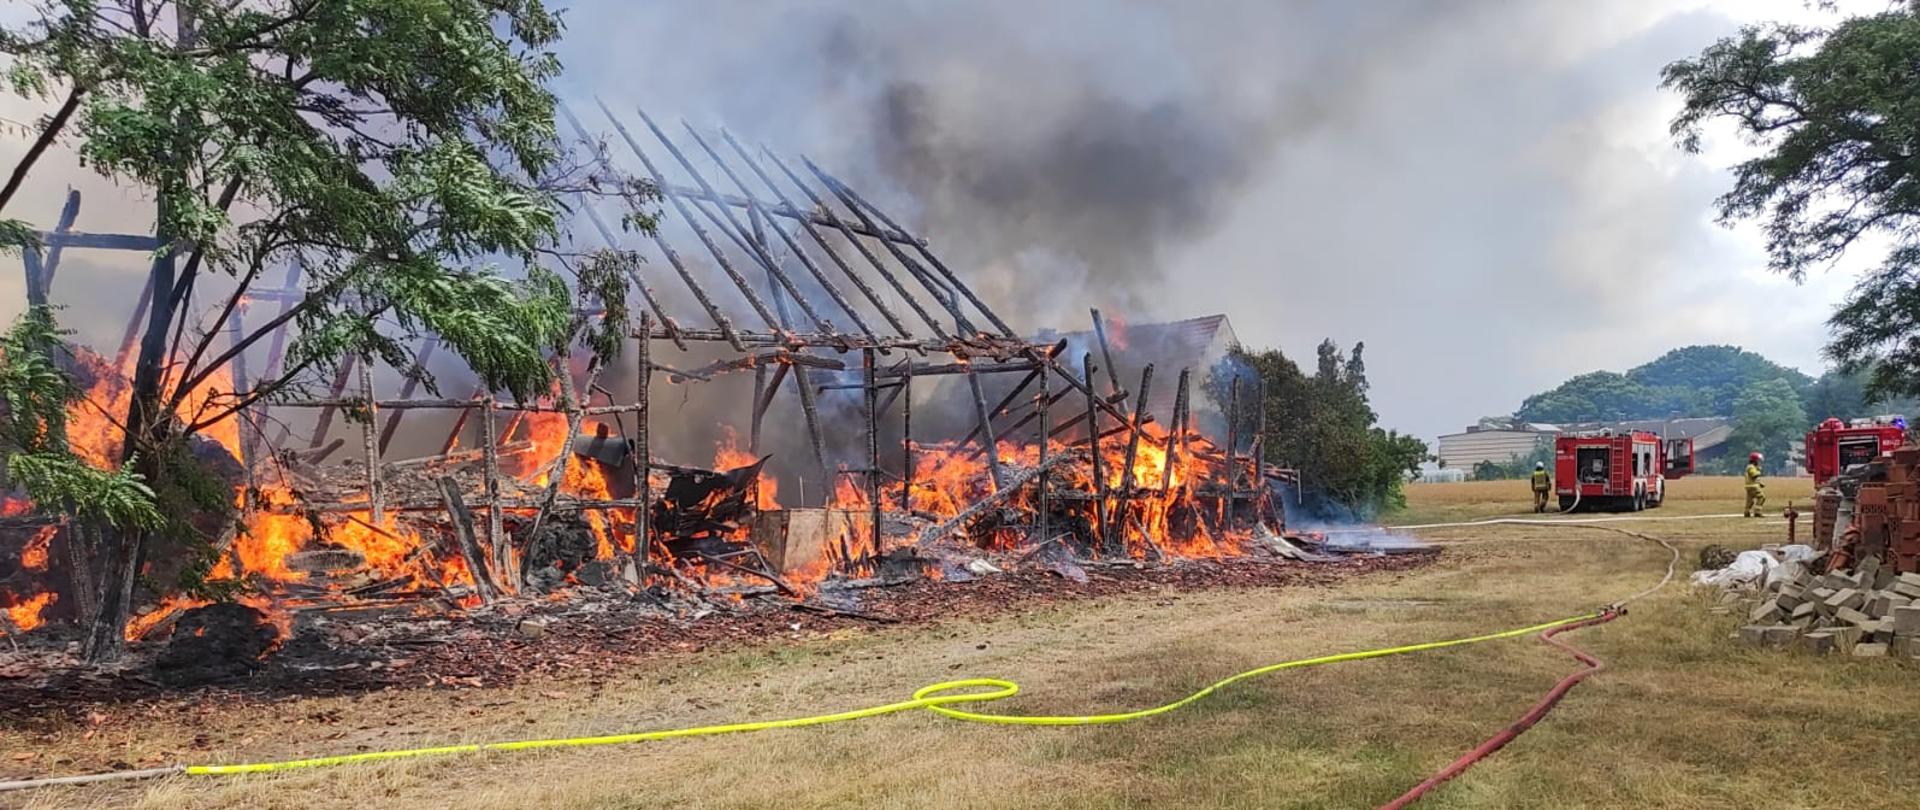 Objęta pożarem stodoła oraz działające na miejscu akcji zastępy.